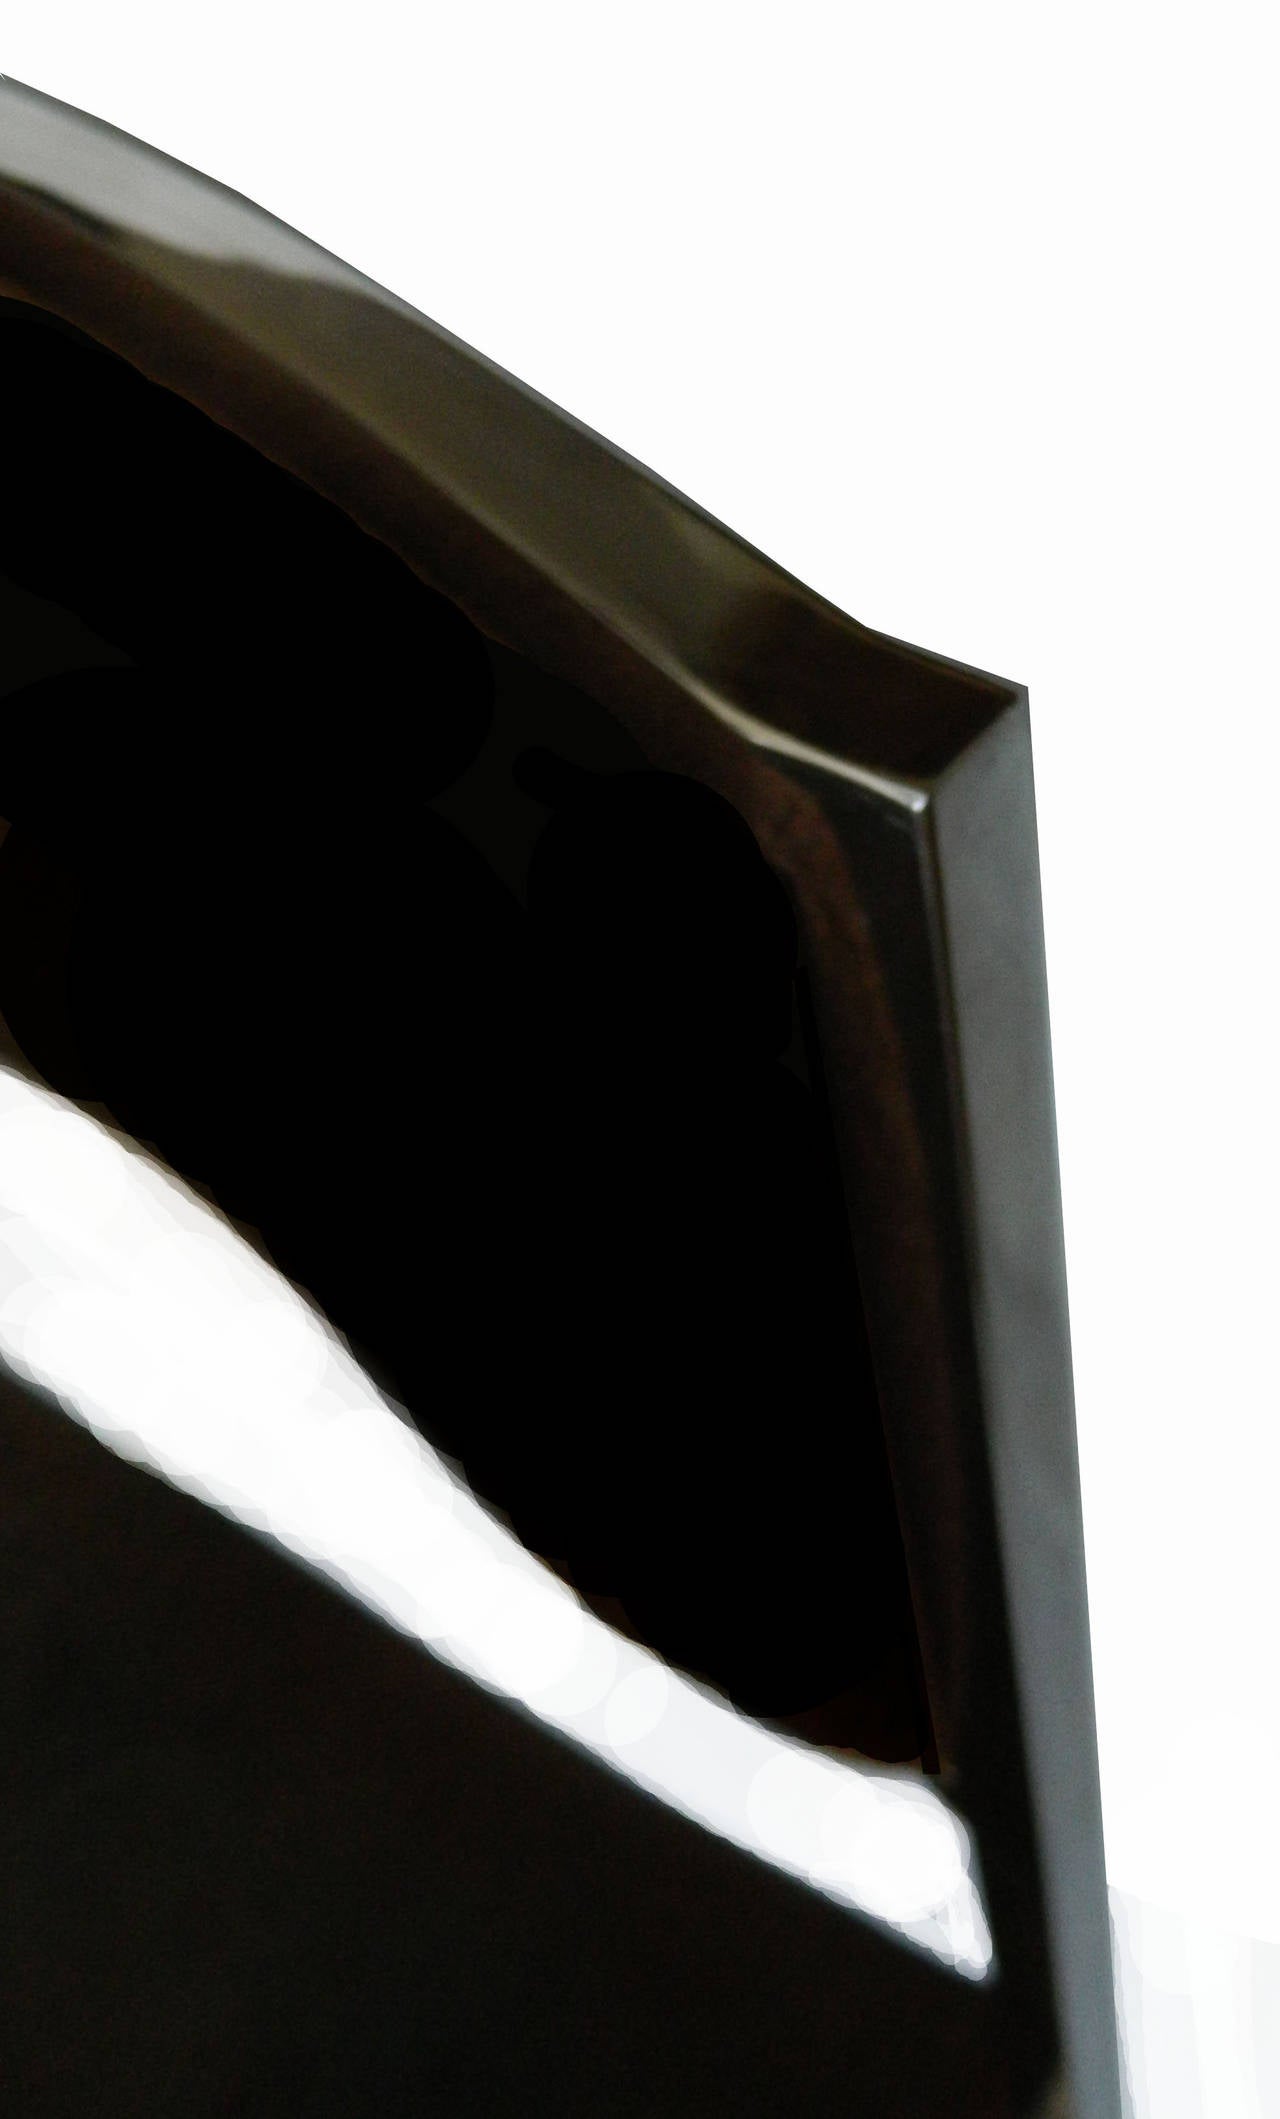 Satz von vier verchromten Metallstühlen, signiert Willy Rizzo auf dem Chrombein.
Neu gepolstert mit schwarzem Ultravelours.
Maße: 19